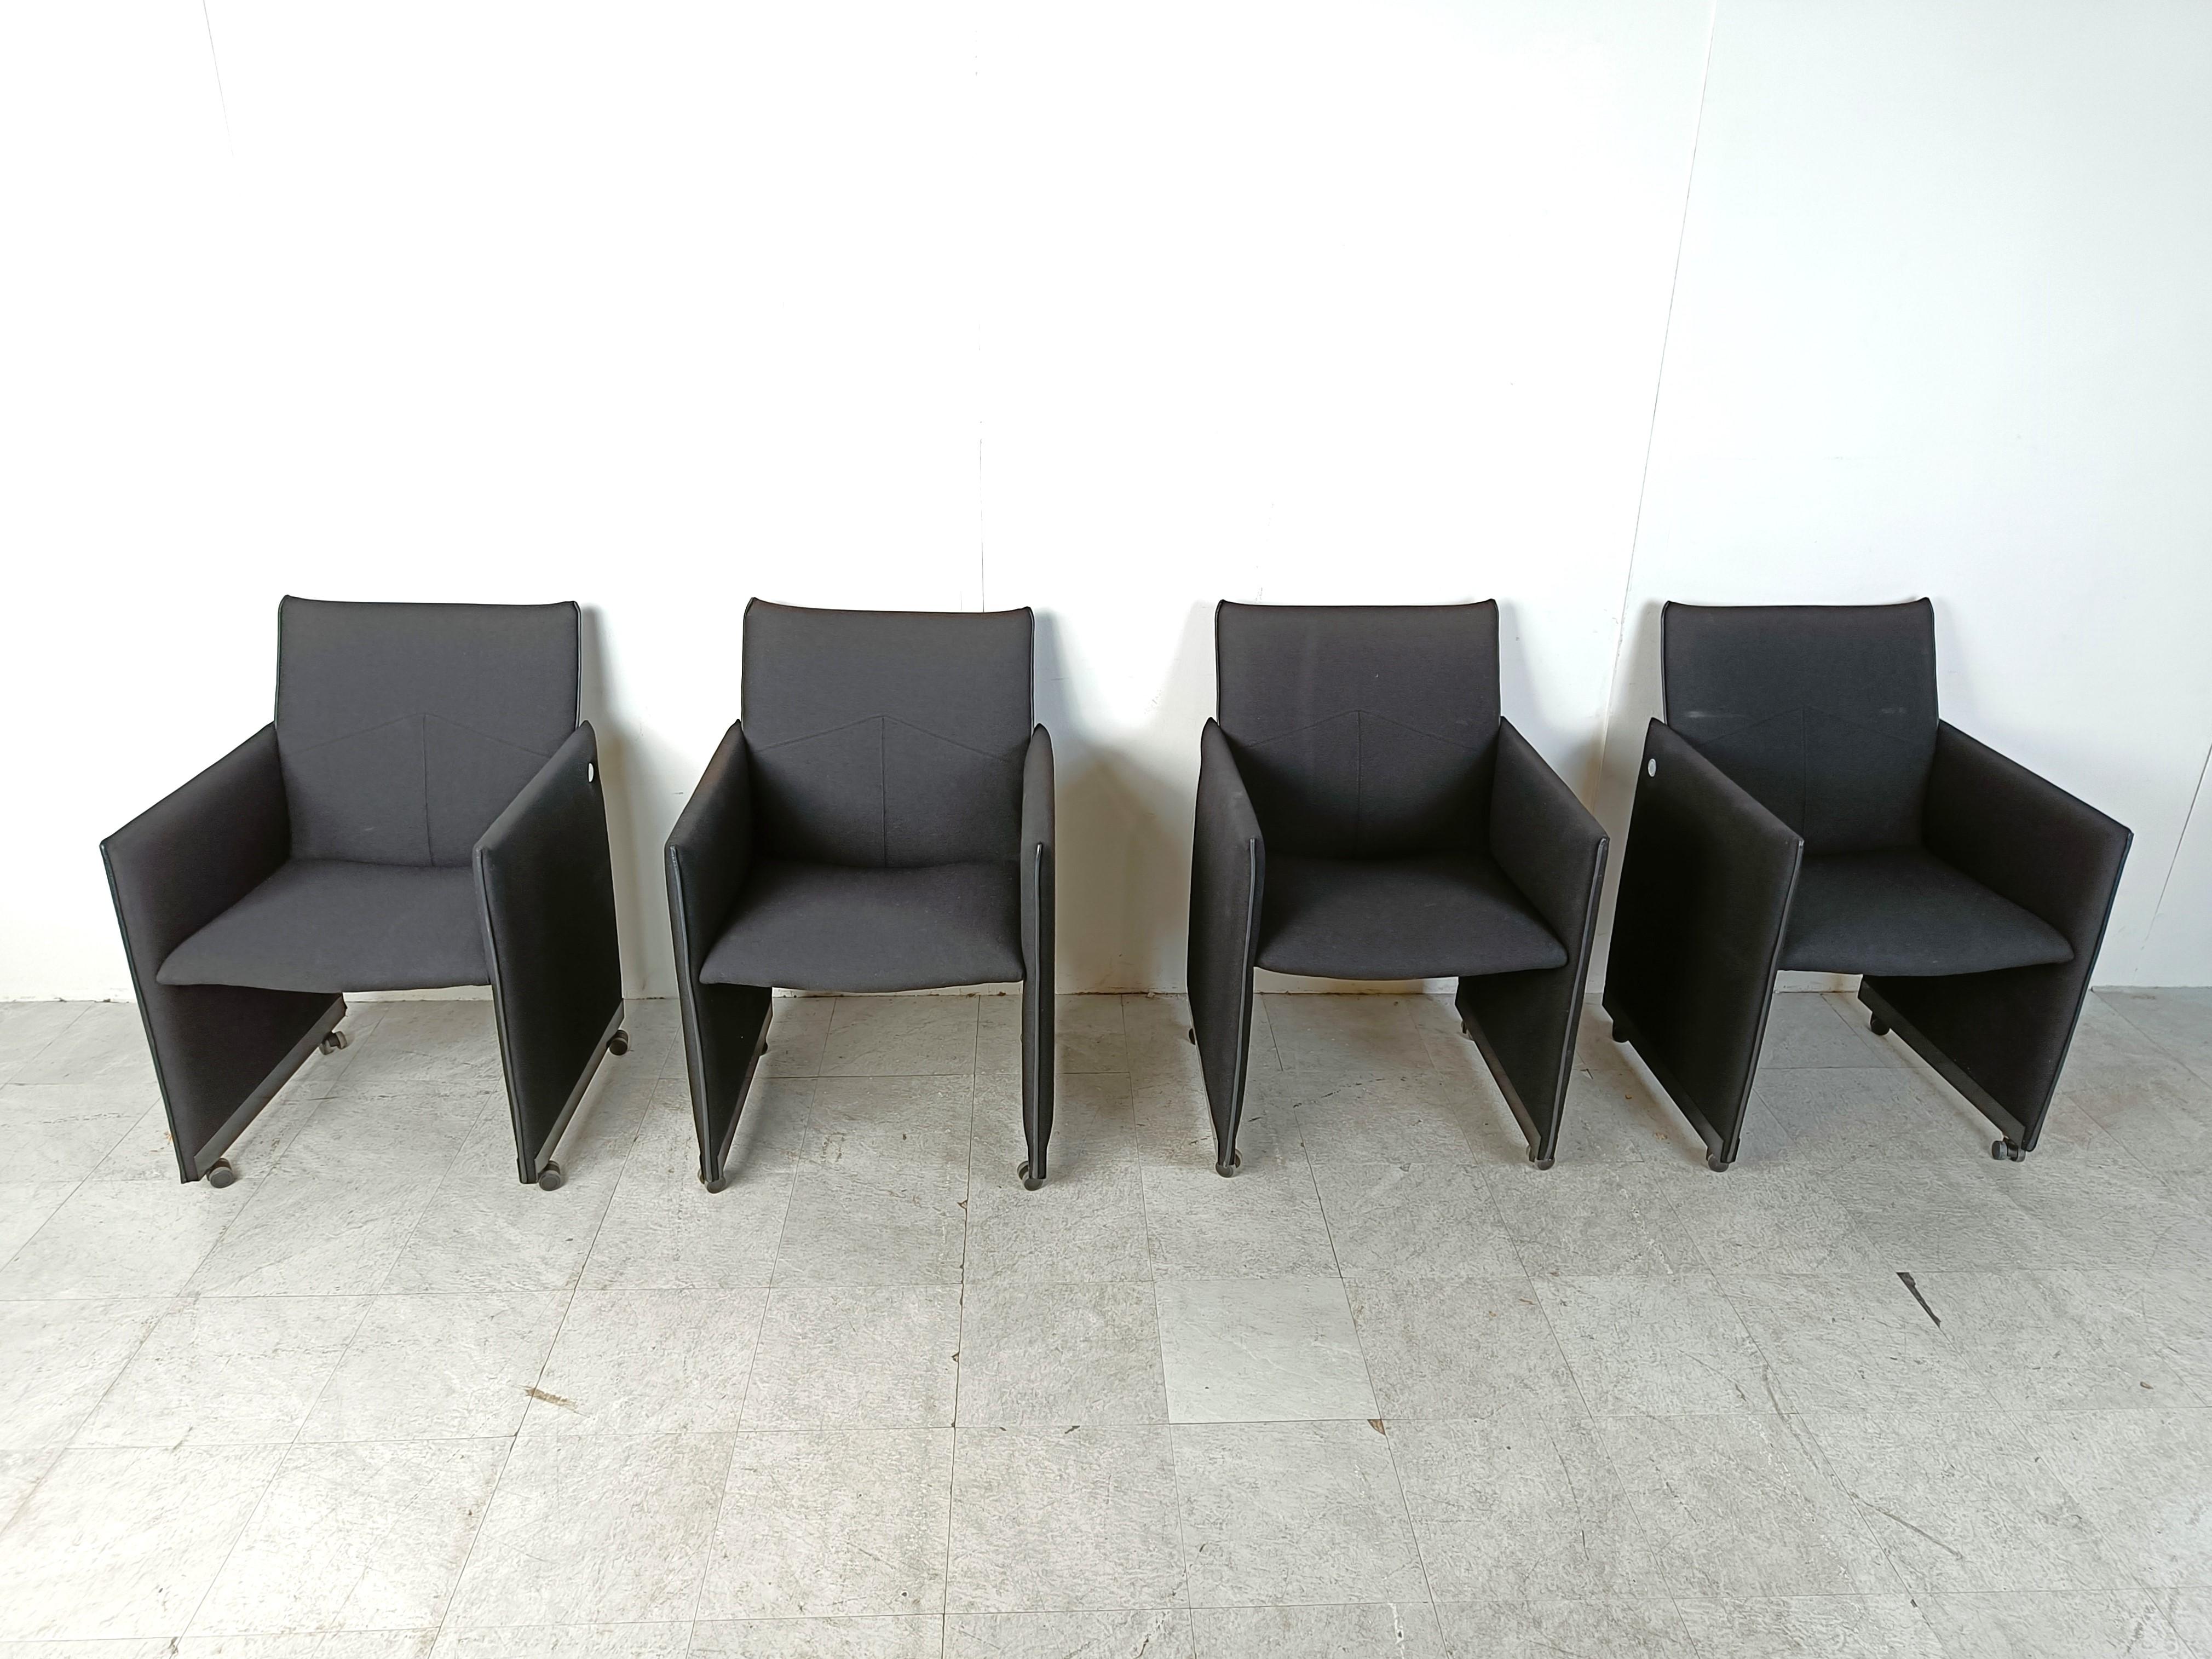 Ensemble de 4 fauteuils en tissu noir sur roulettes conçu par Geoffrey Harcourt pour Artifort.

Les chaises sont étiquetées sur le côté à l'aide d'une plaque métallique ronde et marquées sous les sièges.

Les roulettes pratiques facilitent le